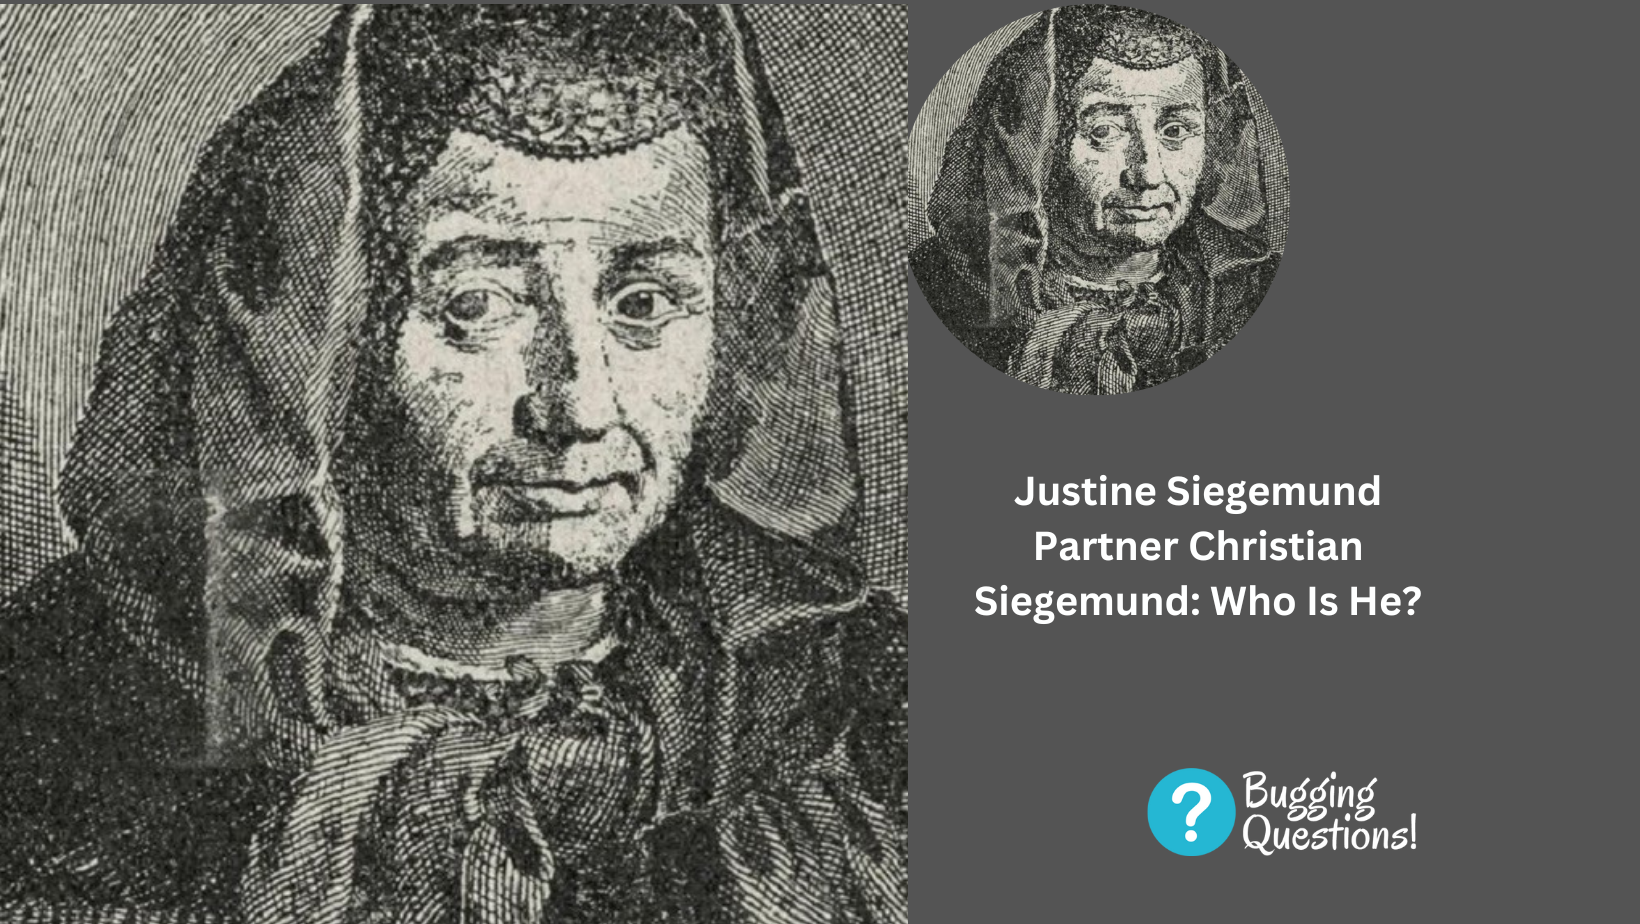 Justine Siegemund Partner Christian Siegemund: Who Is He?